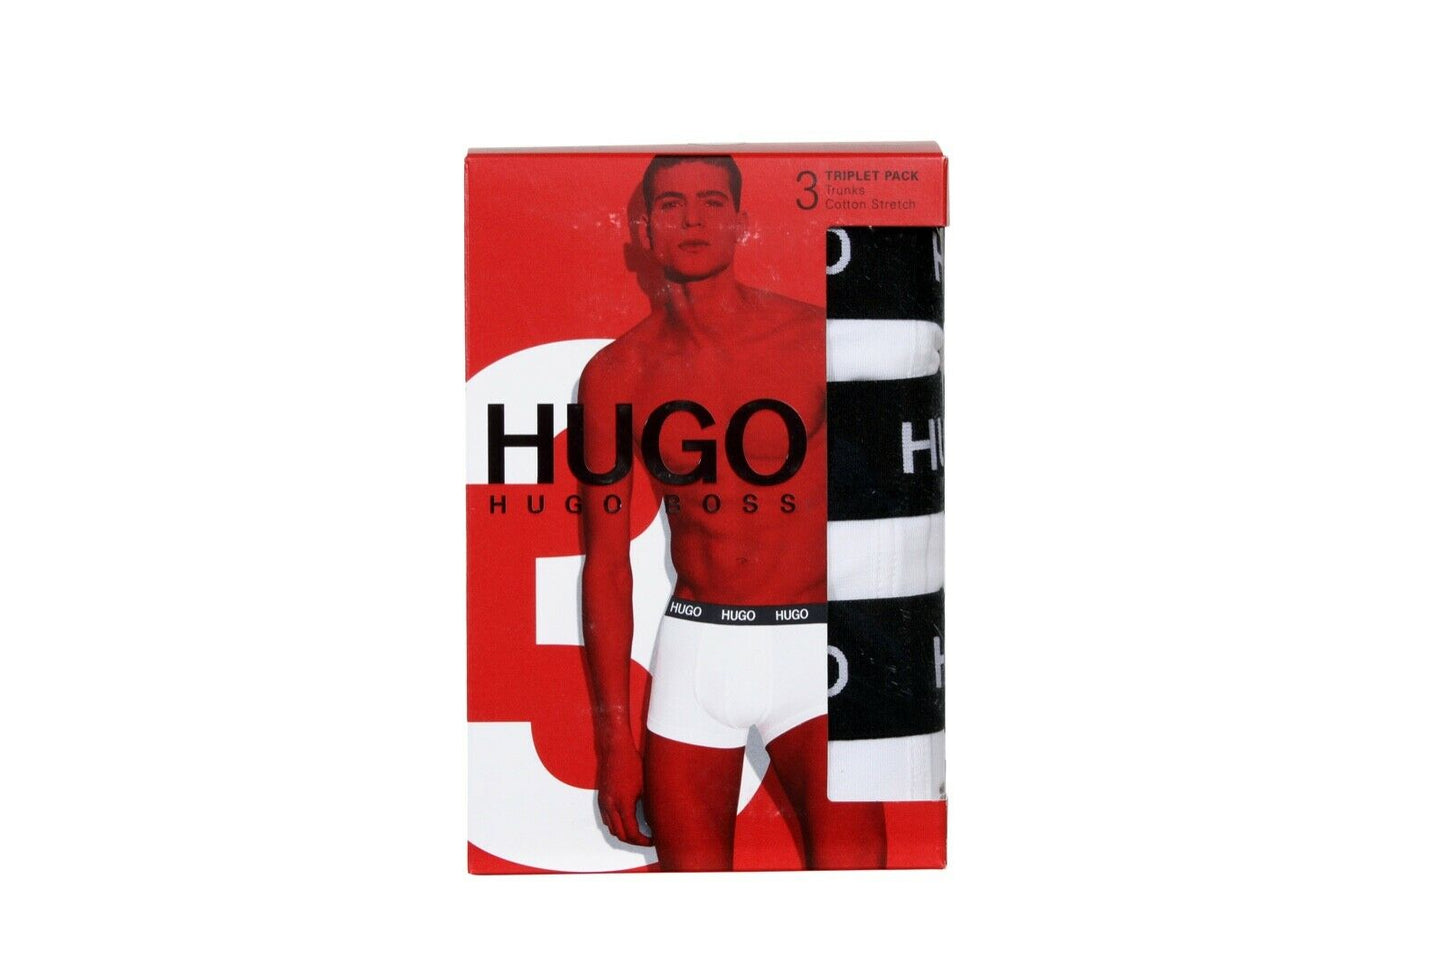 HUGO BOSS Men’s Three-Pack of Trunks with Logo Waistbands in White 50435463 100